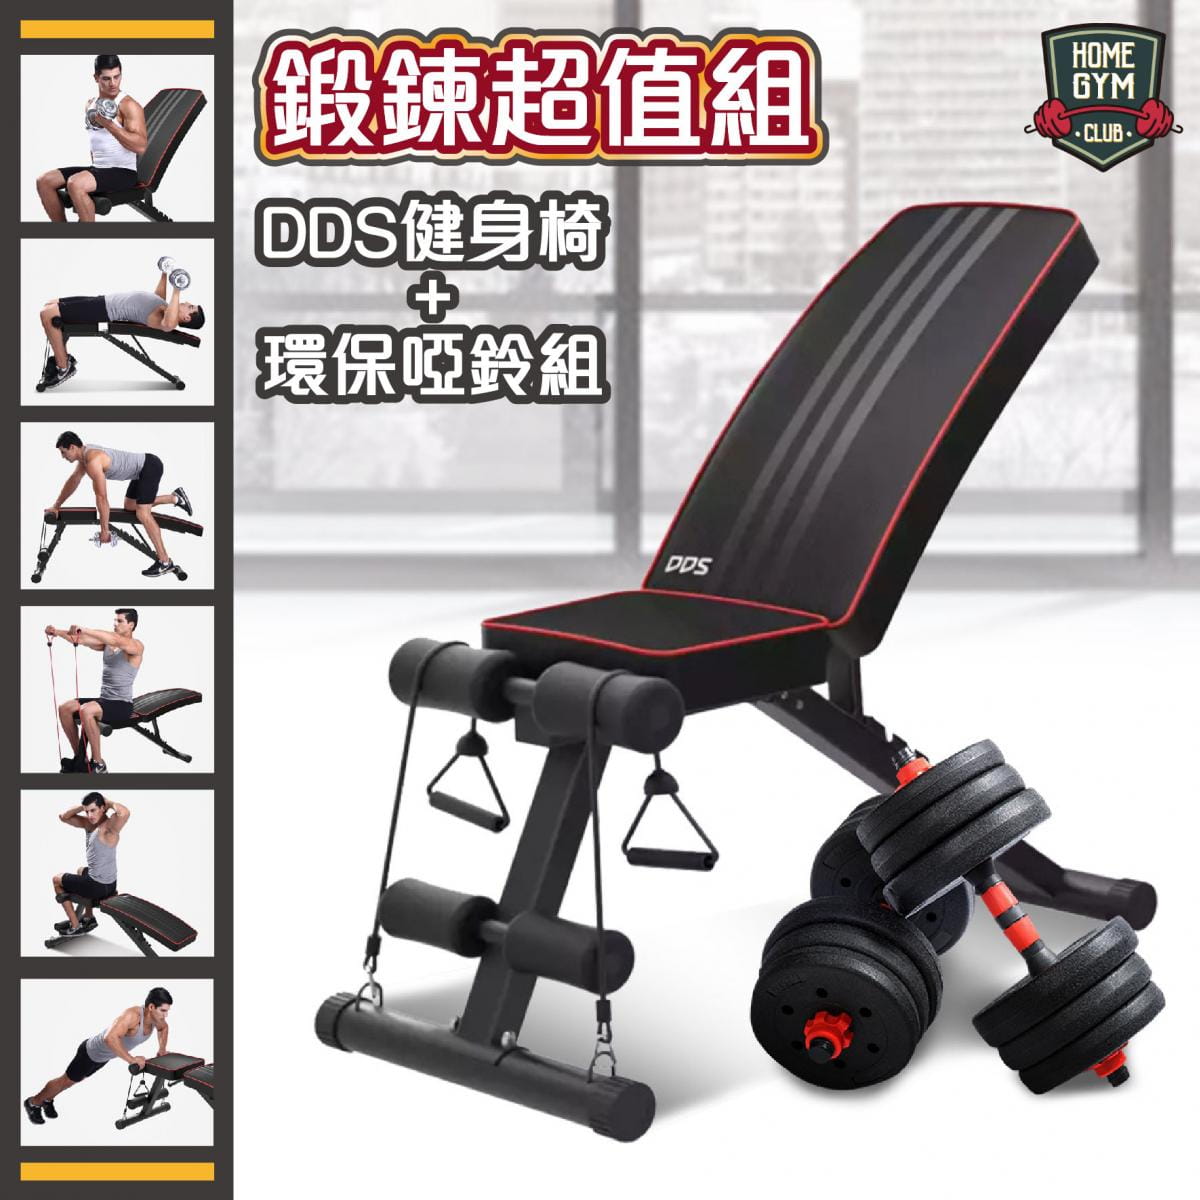 DDS健身椅可調整健身強度，鍛鍊胸肌/臂肌/腹肌組合式啞鈴可透過不同角度及使用方式達到重量訓練效果